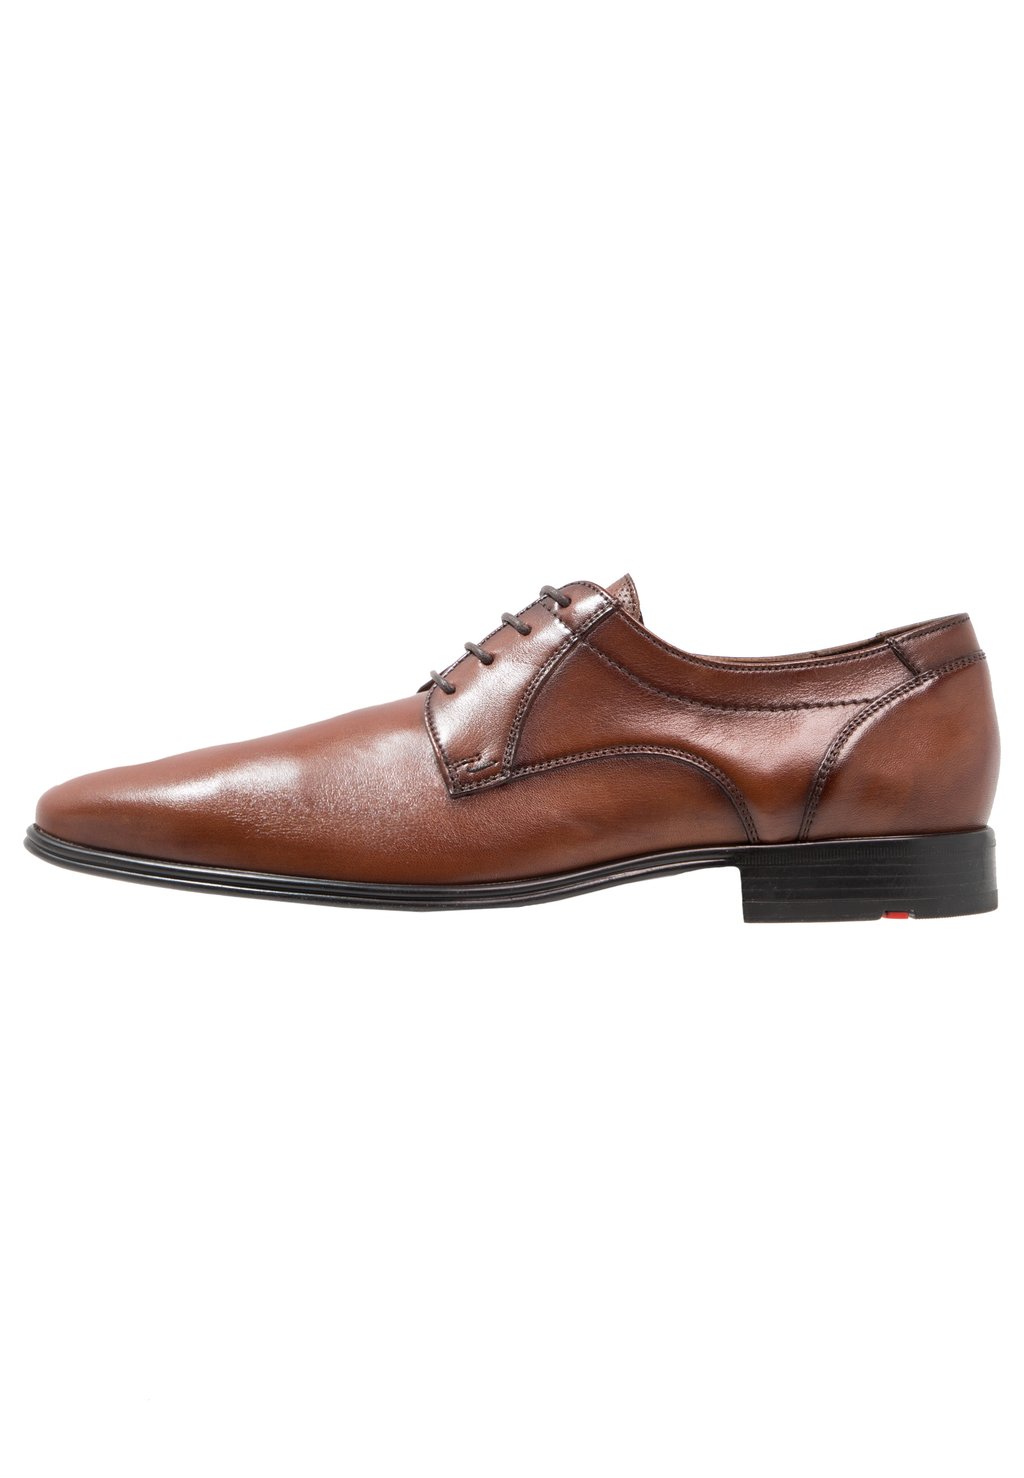 Элегантные туфли на шнуровке Osmond Lloyd, цвет cognac элегантные туфли на шнуровке faro aldo цвет cognac